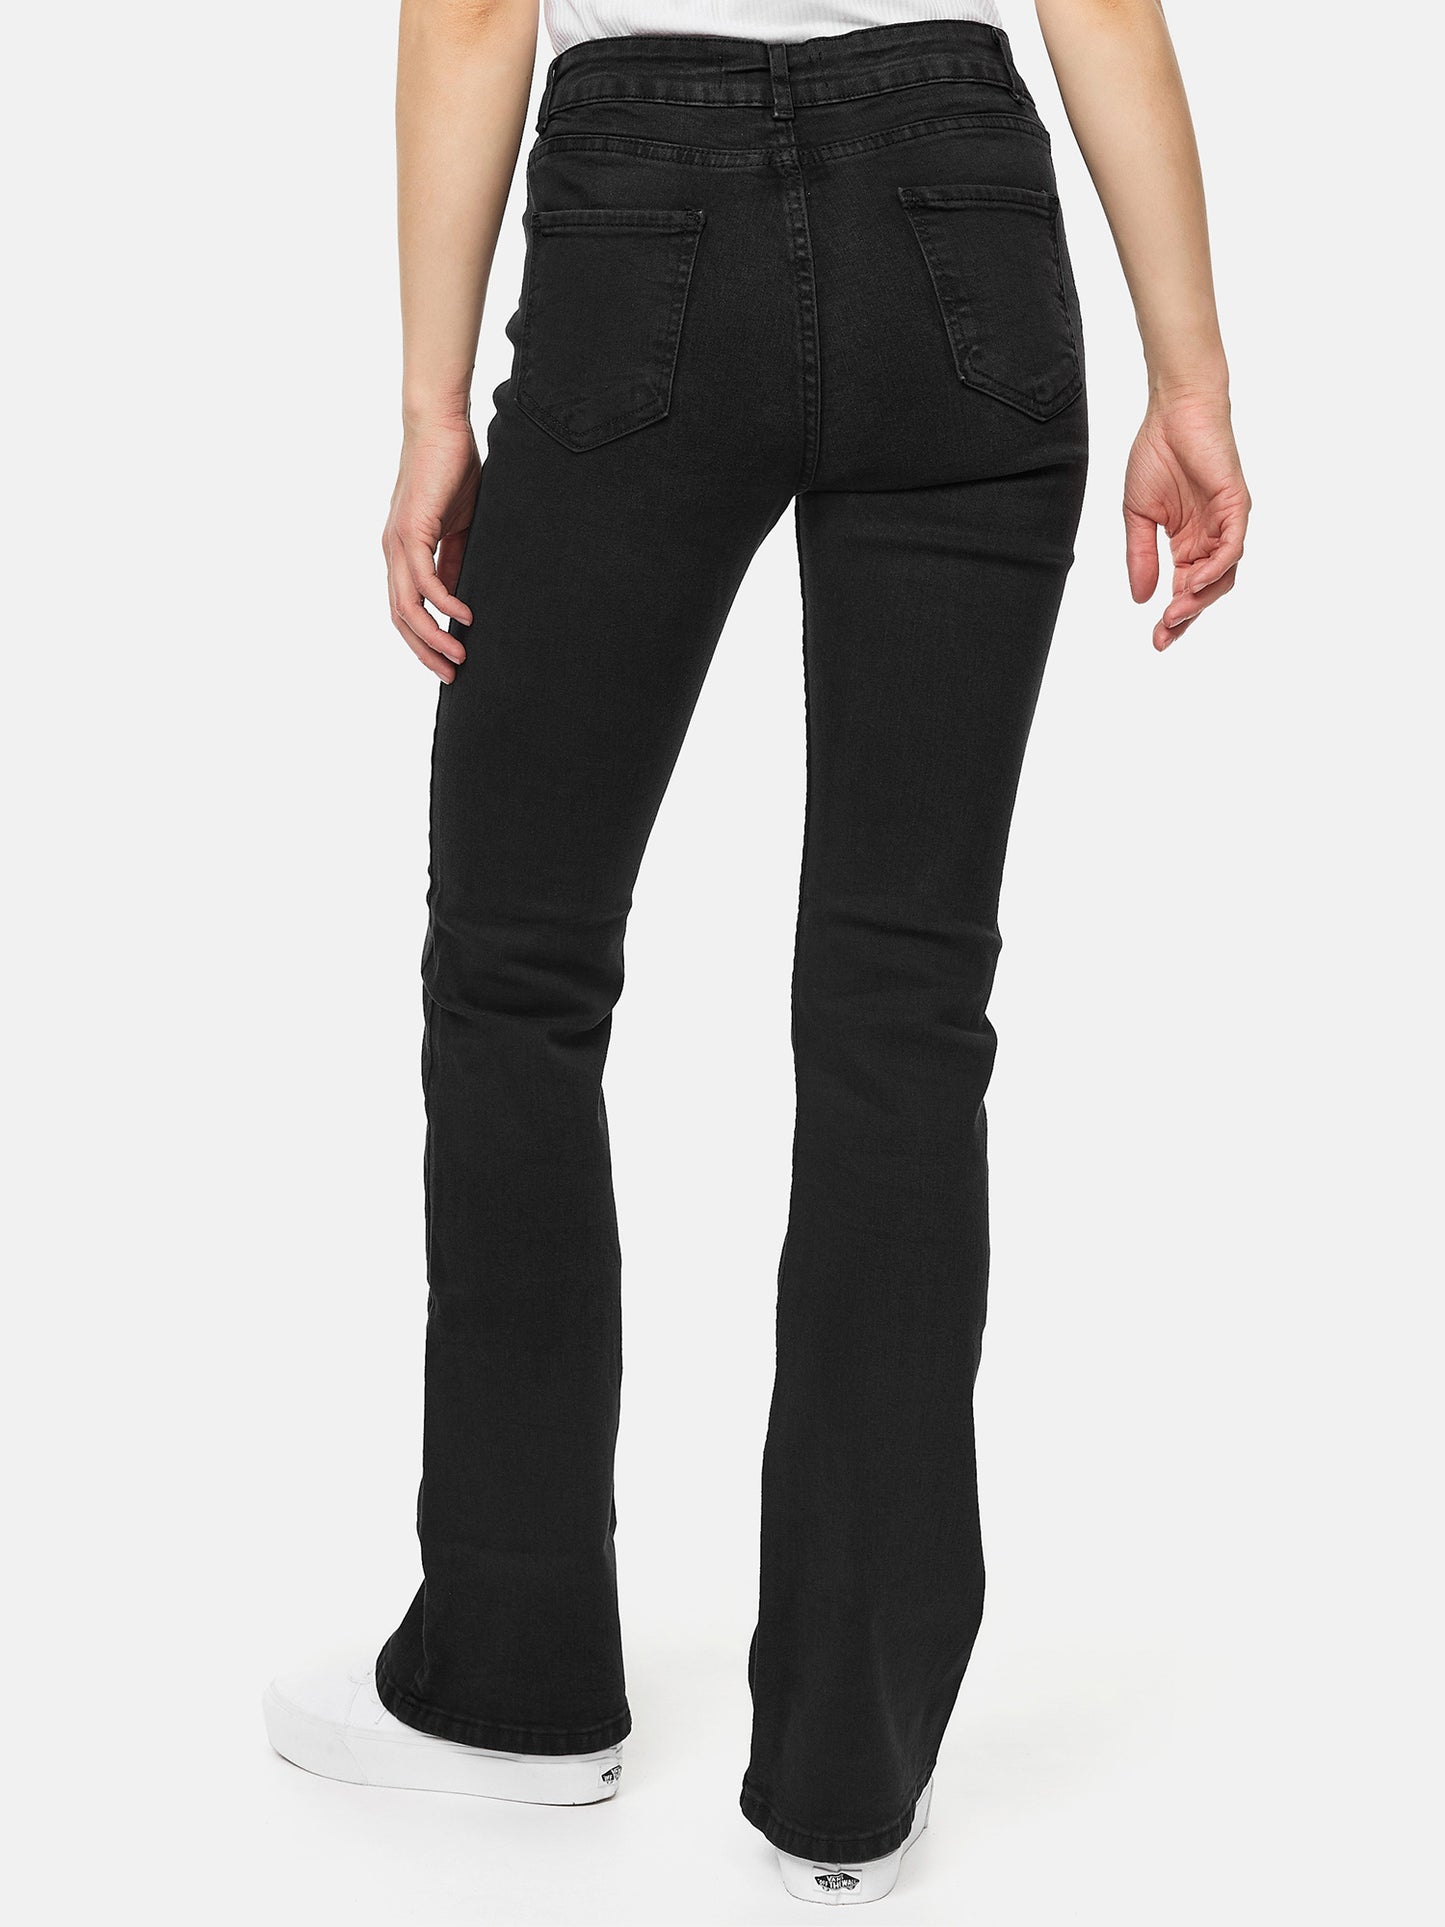 Tazzio Damen Bootcut Jeans F123